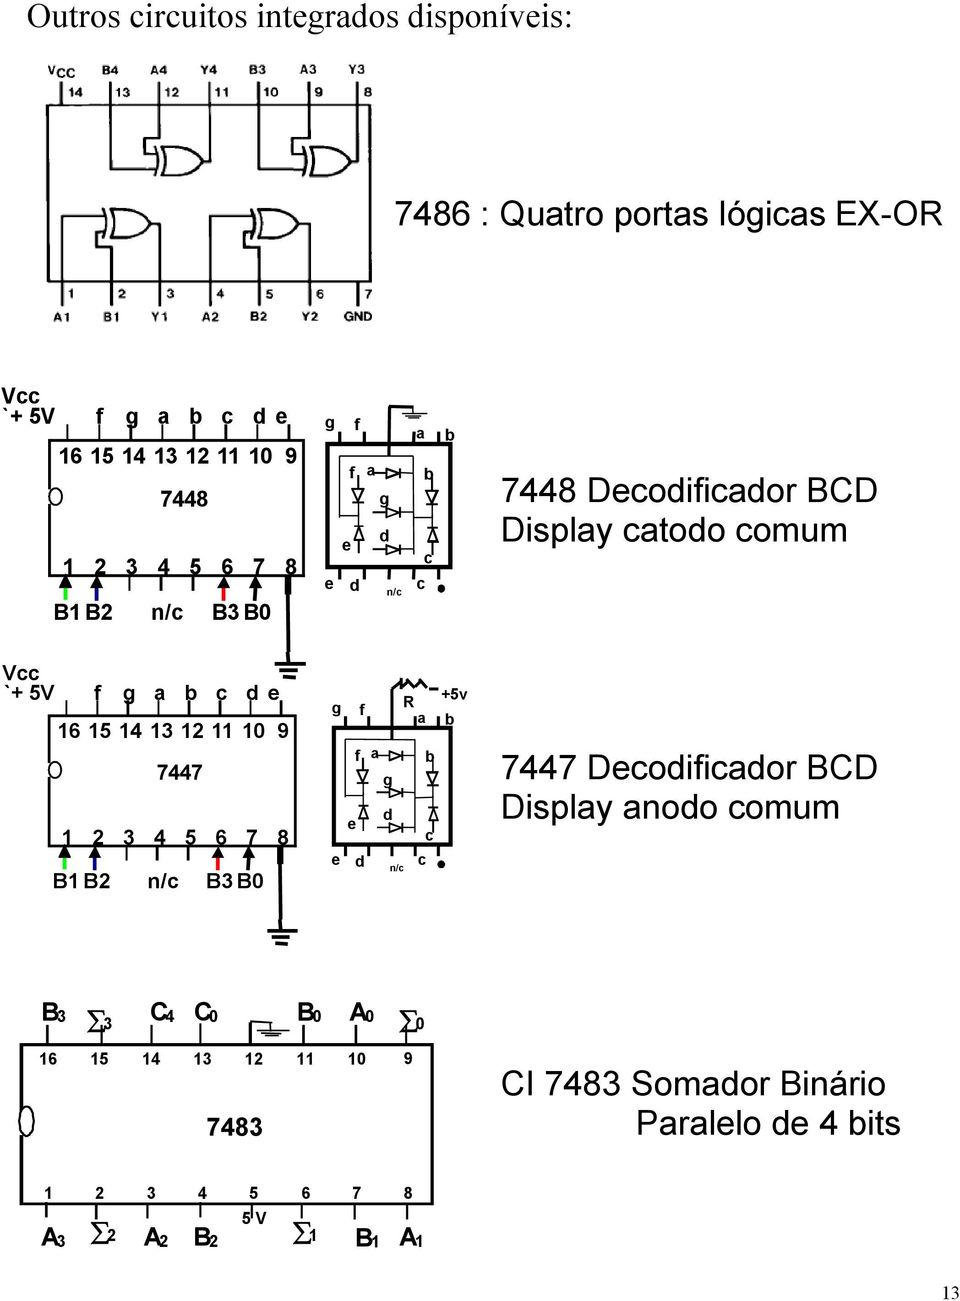 d e 6 5 4 3 2 9 2 3 4 5 6 7 8 B B2 7447 n/c B3 B g e f f a g d R a e d c n/c b c +5v b 7447 Decodificador BCD Display